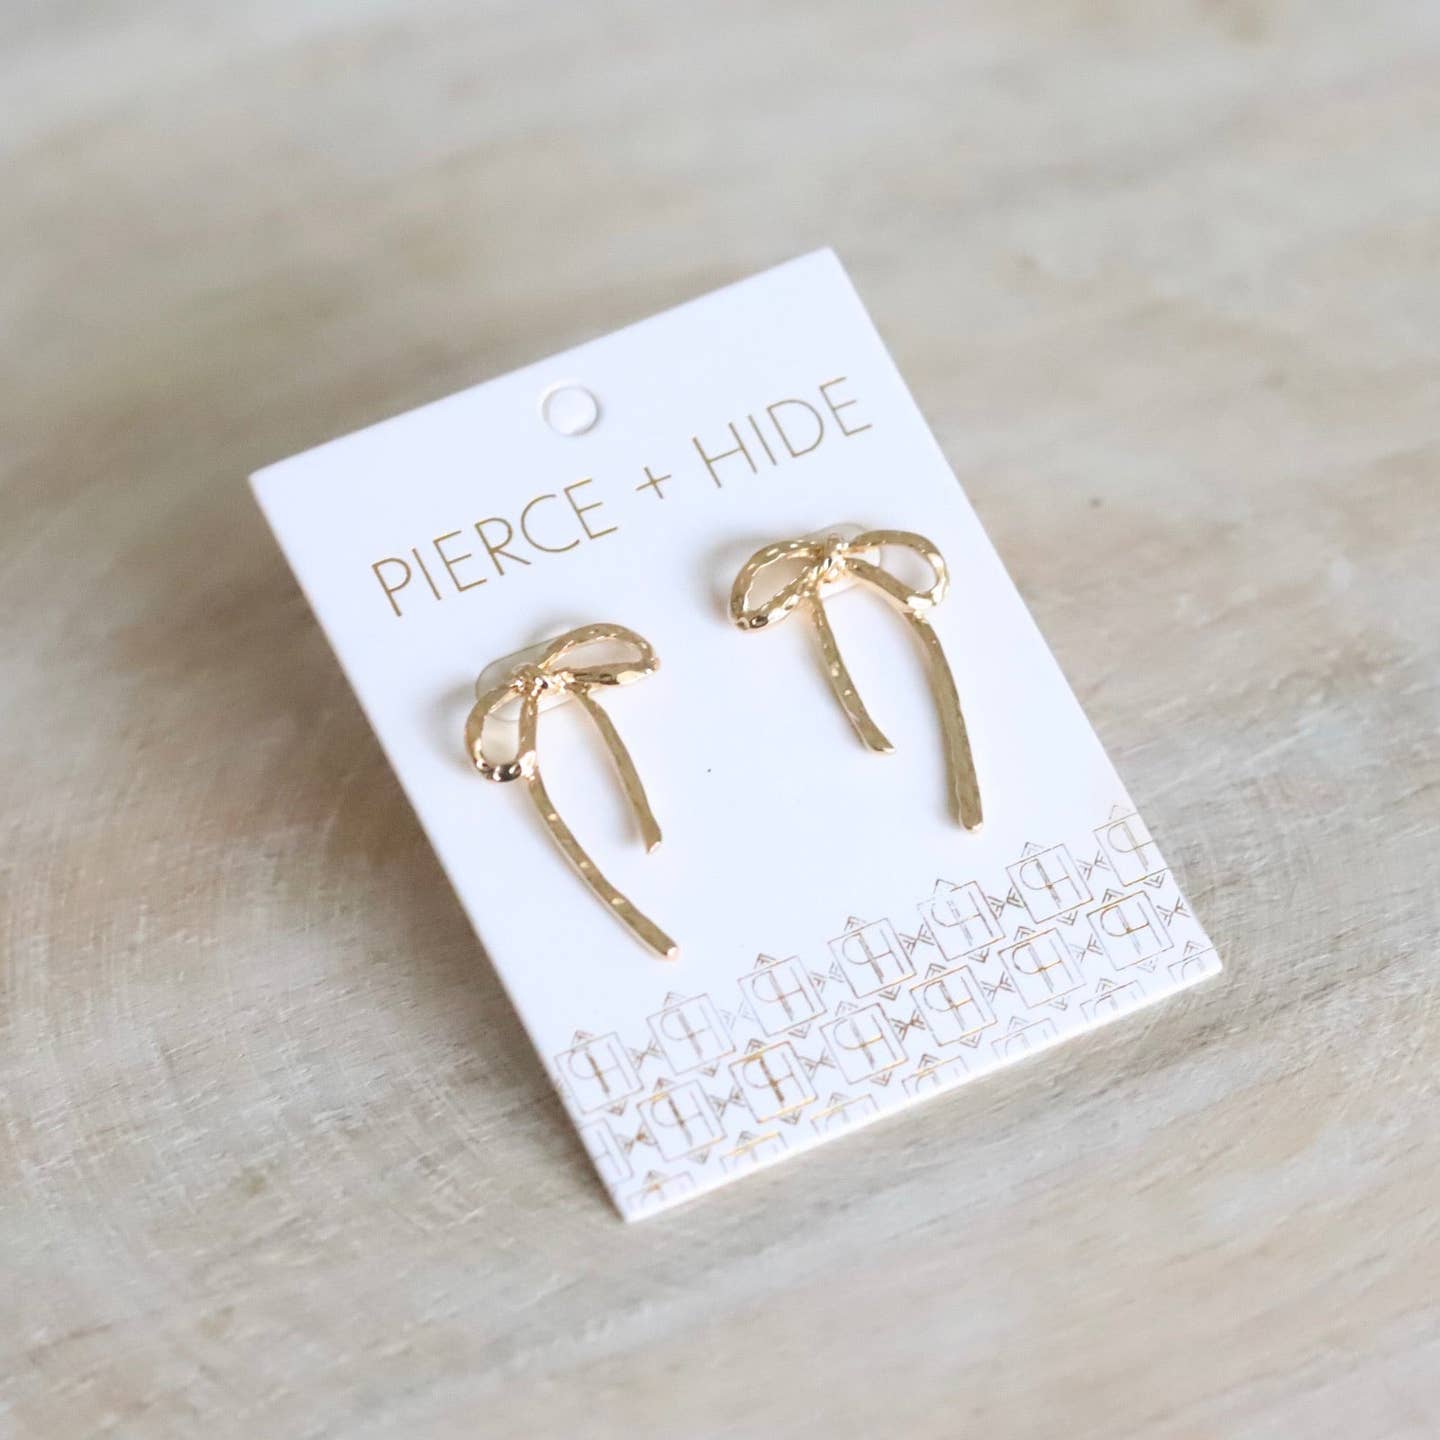 Pierce + Hide: Textured Ribbon Drop Earrings